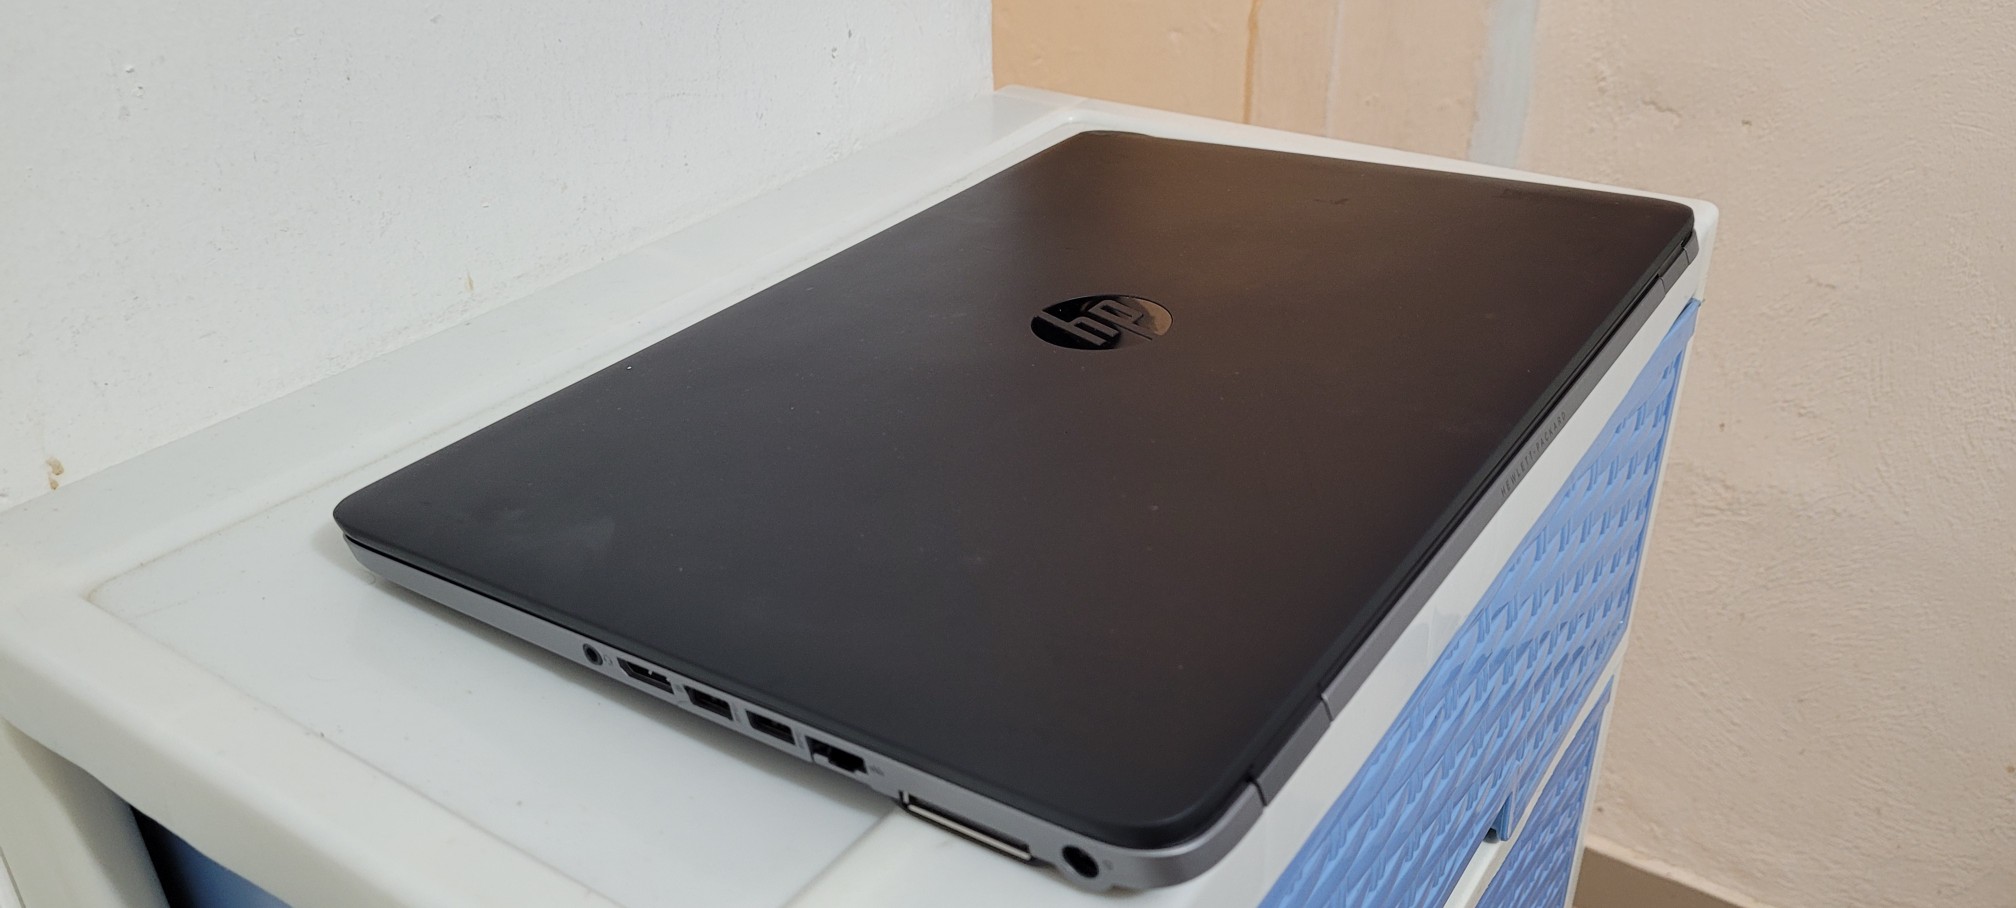 computadoras y laptops - Hp Elitebook 17 Pulg Core i5 Ram 8gb Disco 256gb SSD Teclado Retroiluminado 2